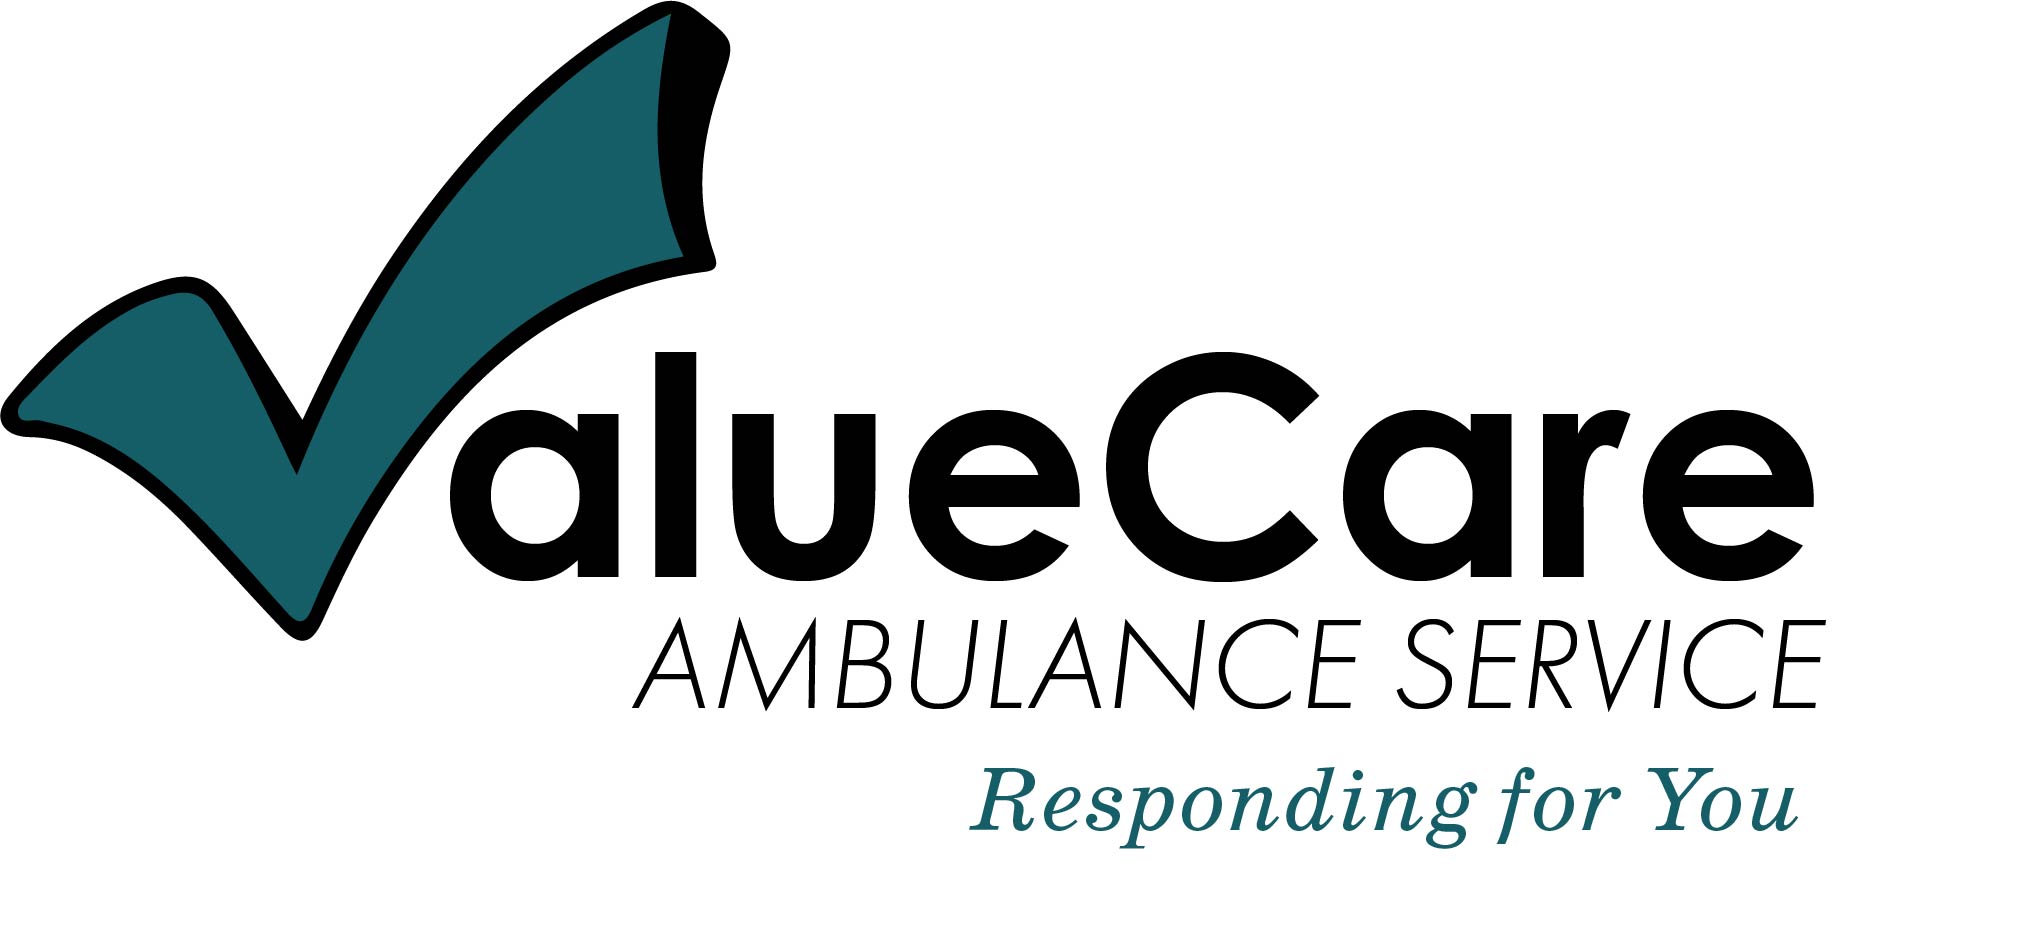 ValueCare Ambulance